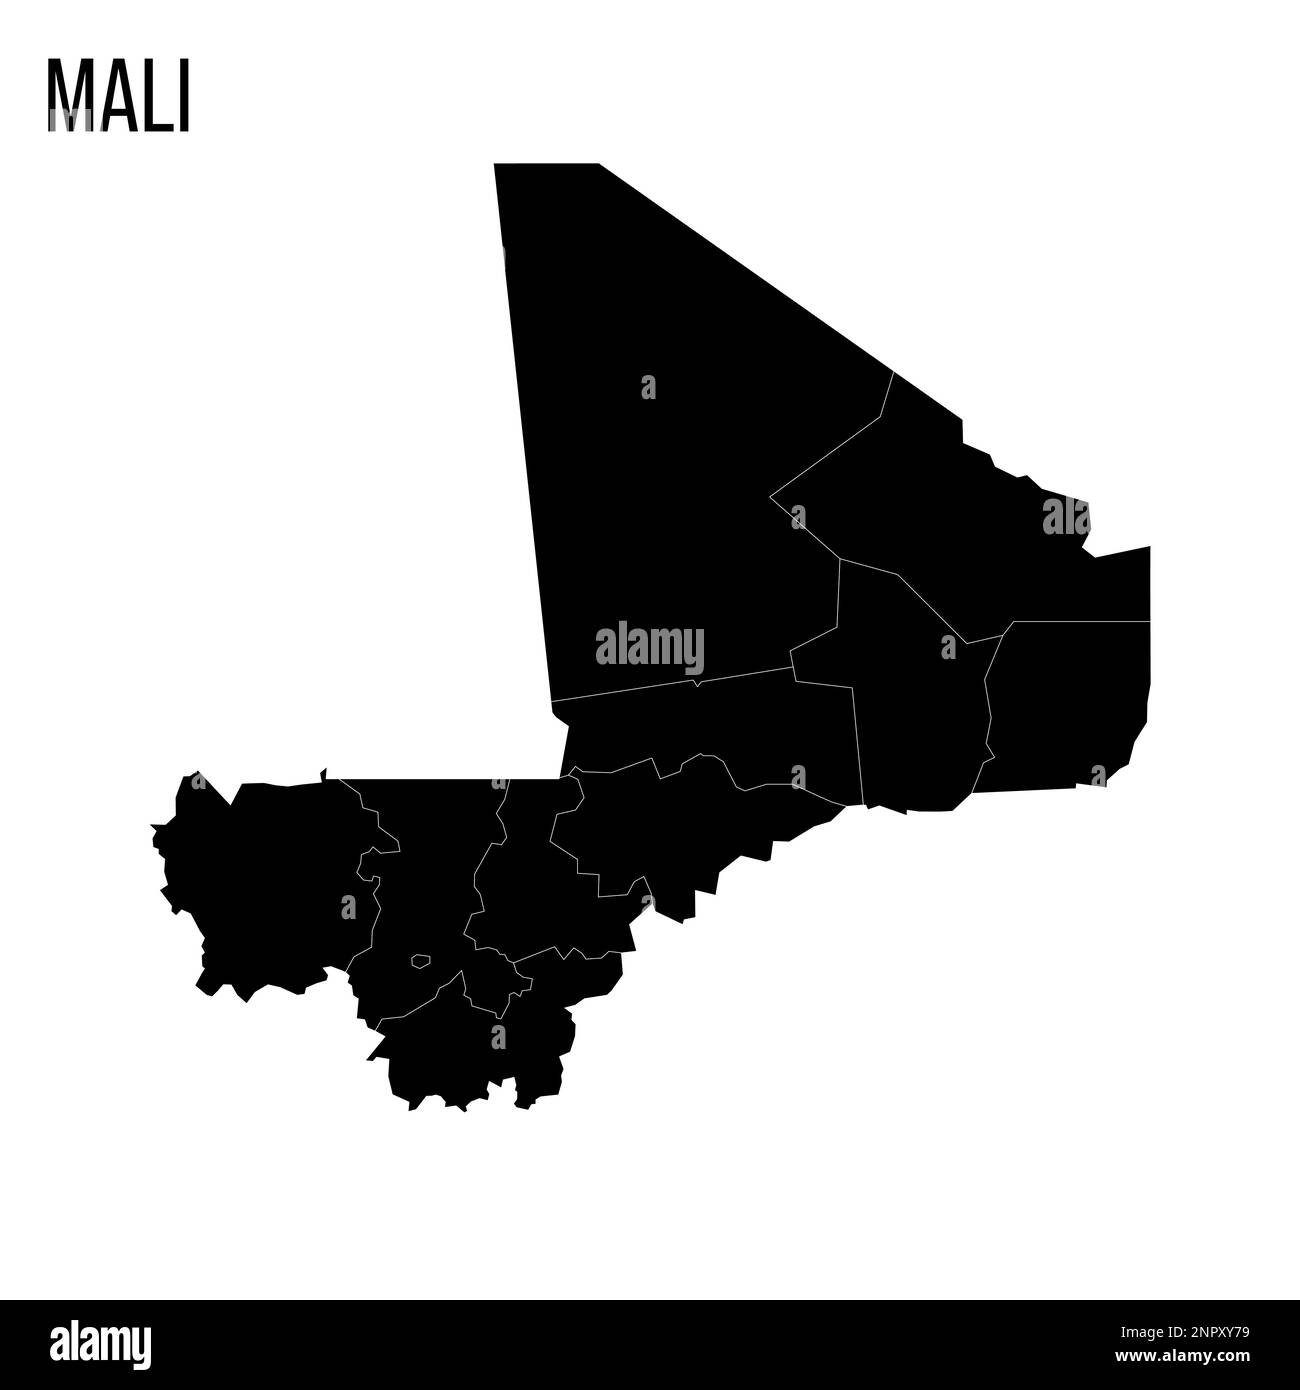 Mappa politica del Mali delle divisioni amministrative - regioni e capoluogo distretto di Bamako. Mappa nera vuota e nome del paese. Illustrazione Vettoriale